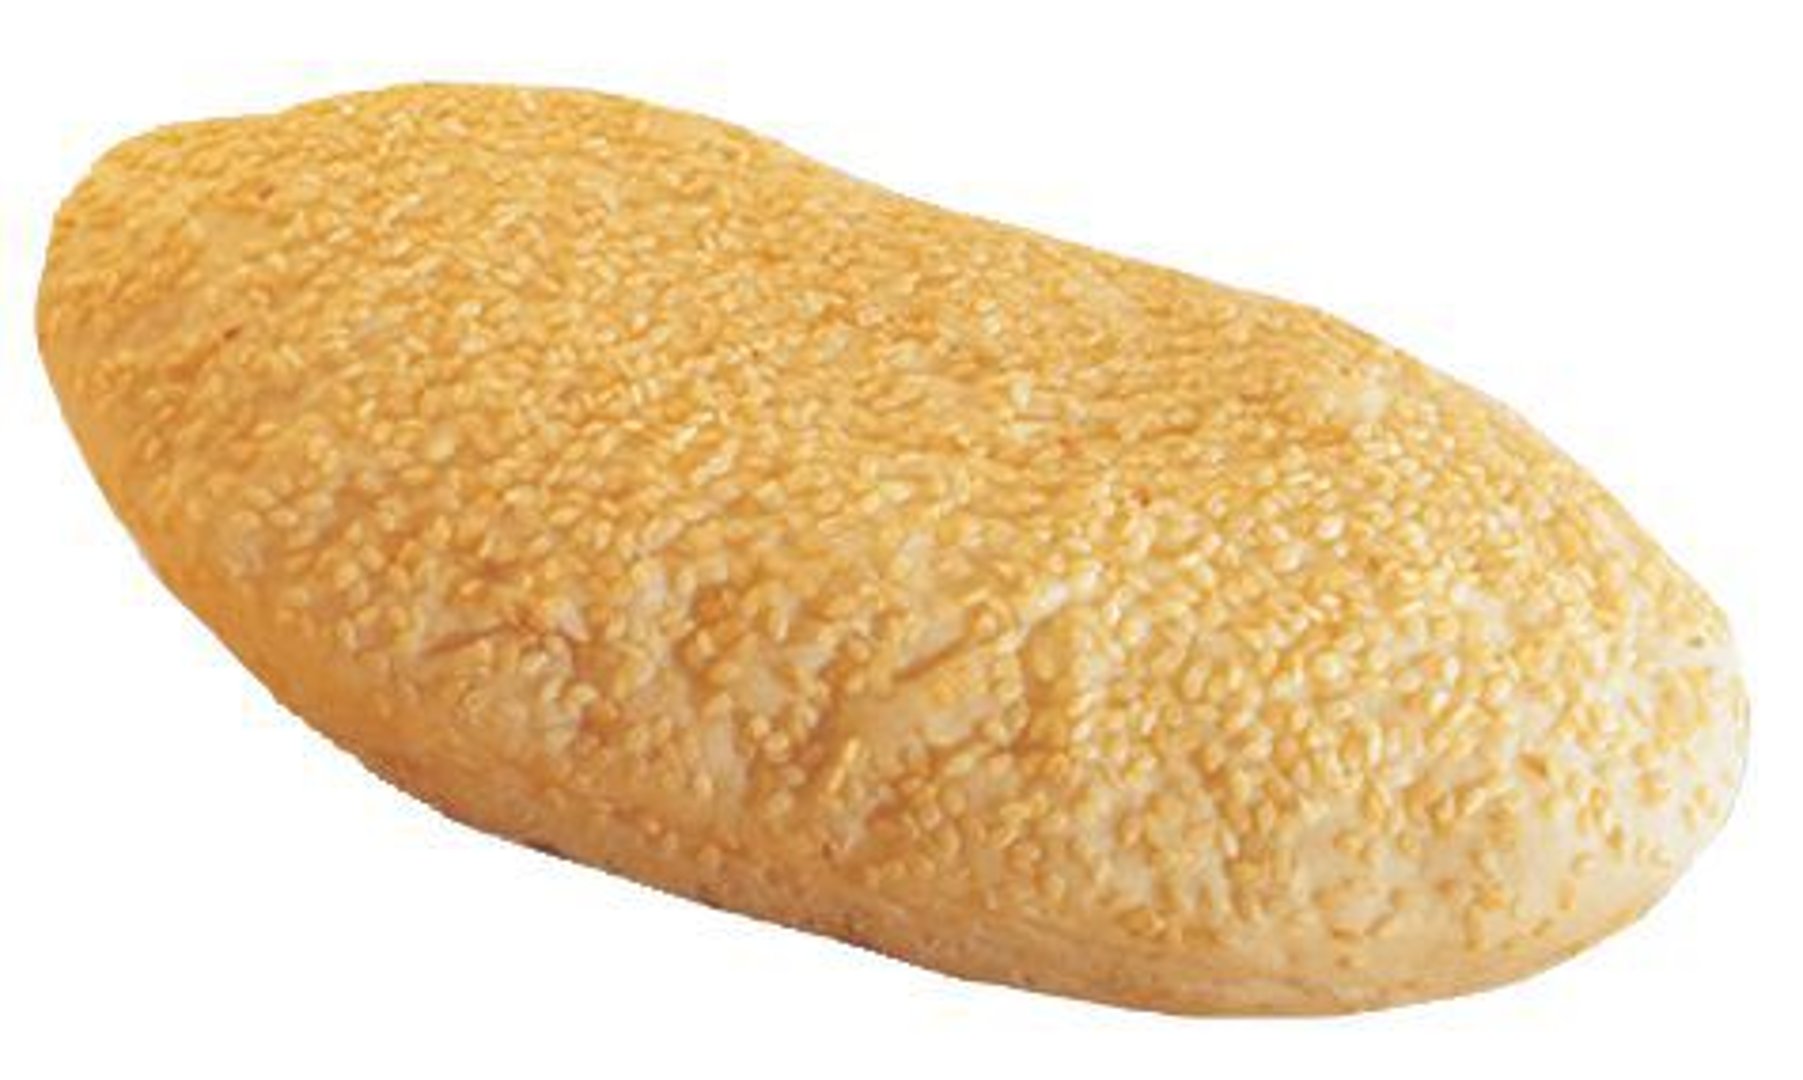 Edna - Panini mit Sesam tiefgefroren, vorgebacken 15 Stück à 130 g - 1,95 kg Karton